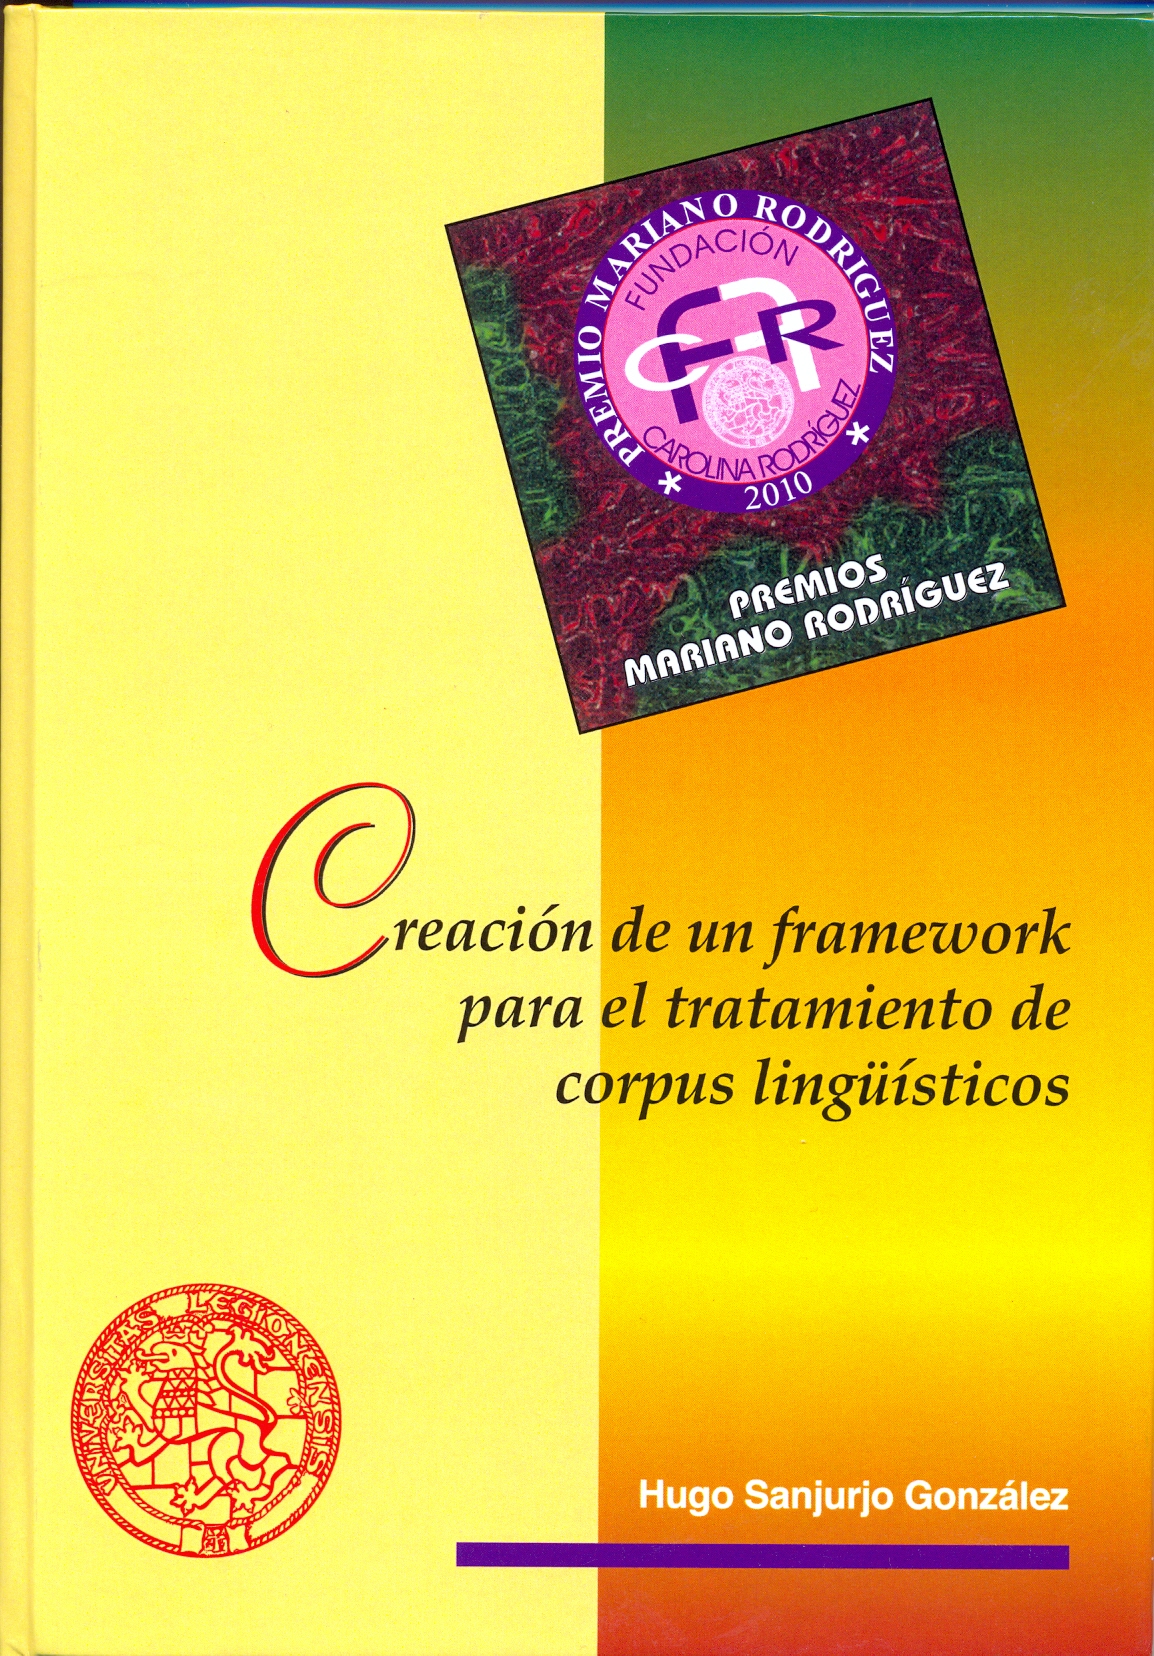 Imagen de portada del libro Creación de un framework para el tratamiento de corpus lingüísticos